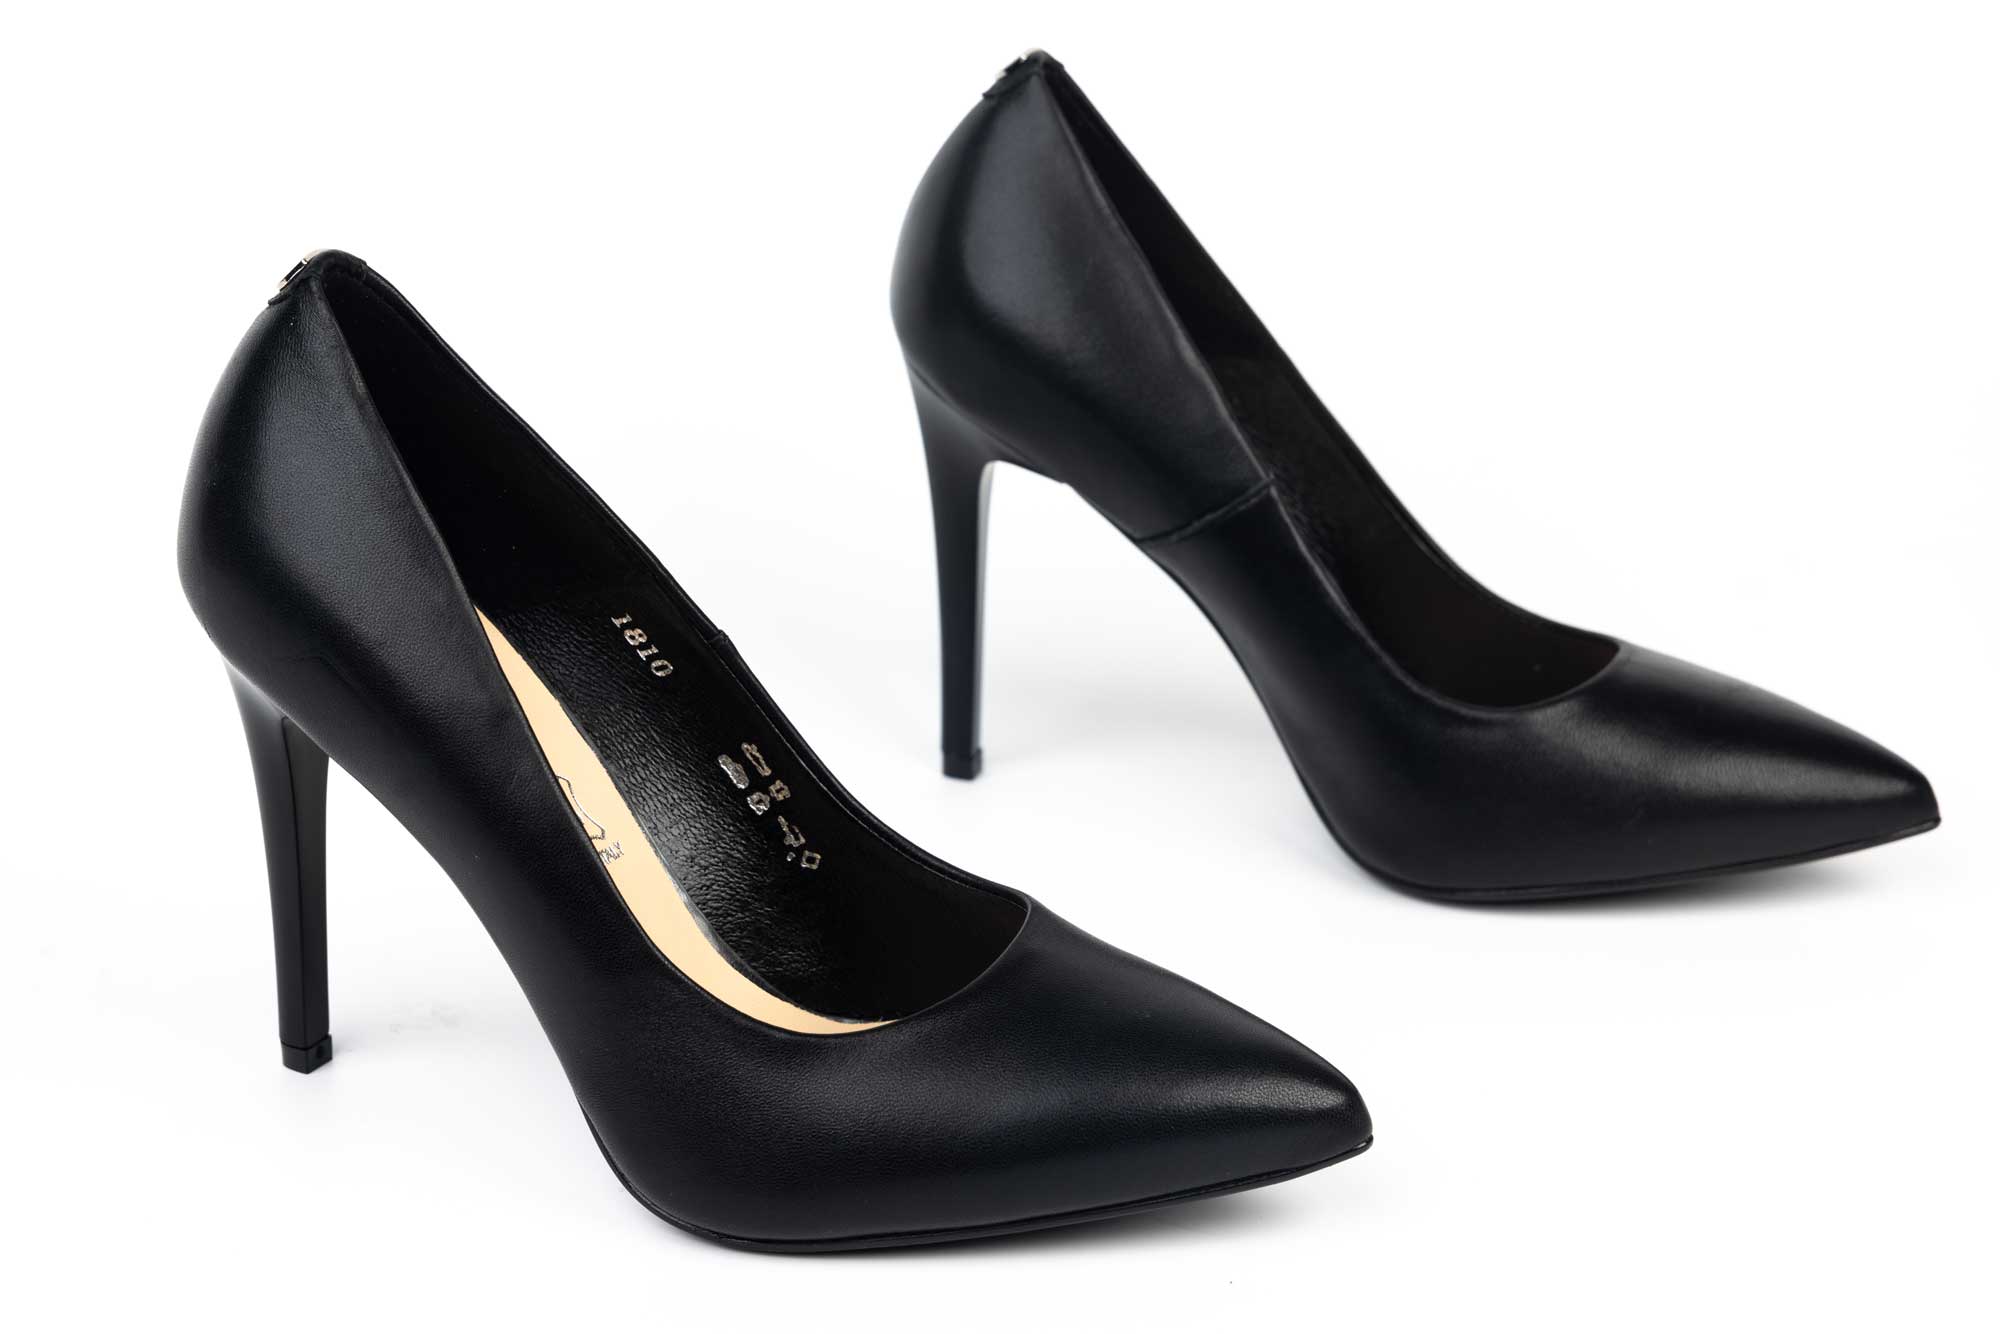 Pantofi dama eleganti SALA 1810 negru box din piele naturală.